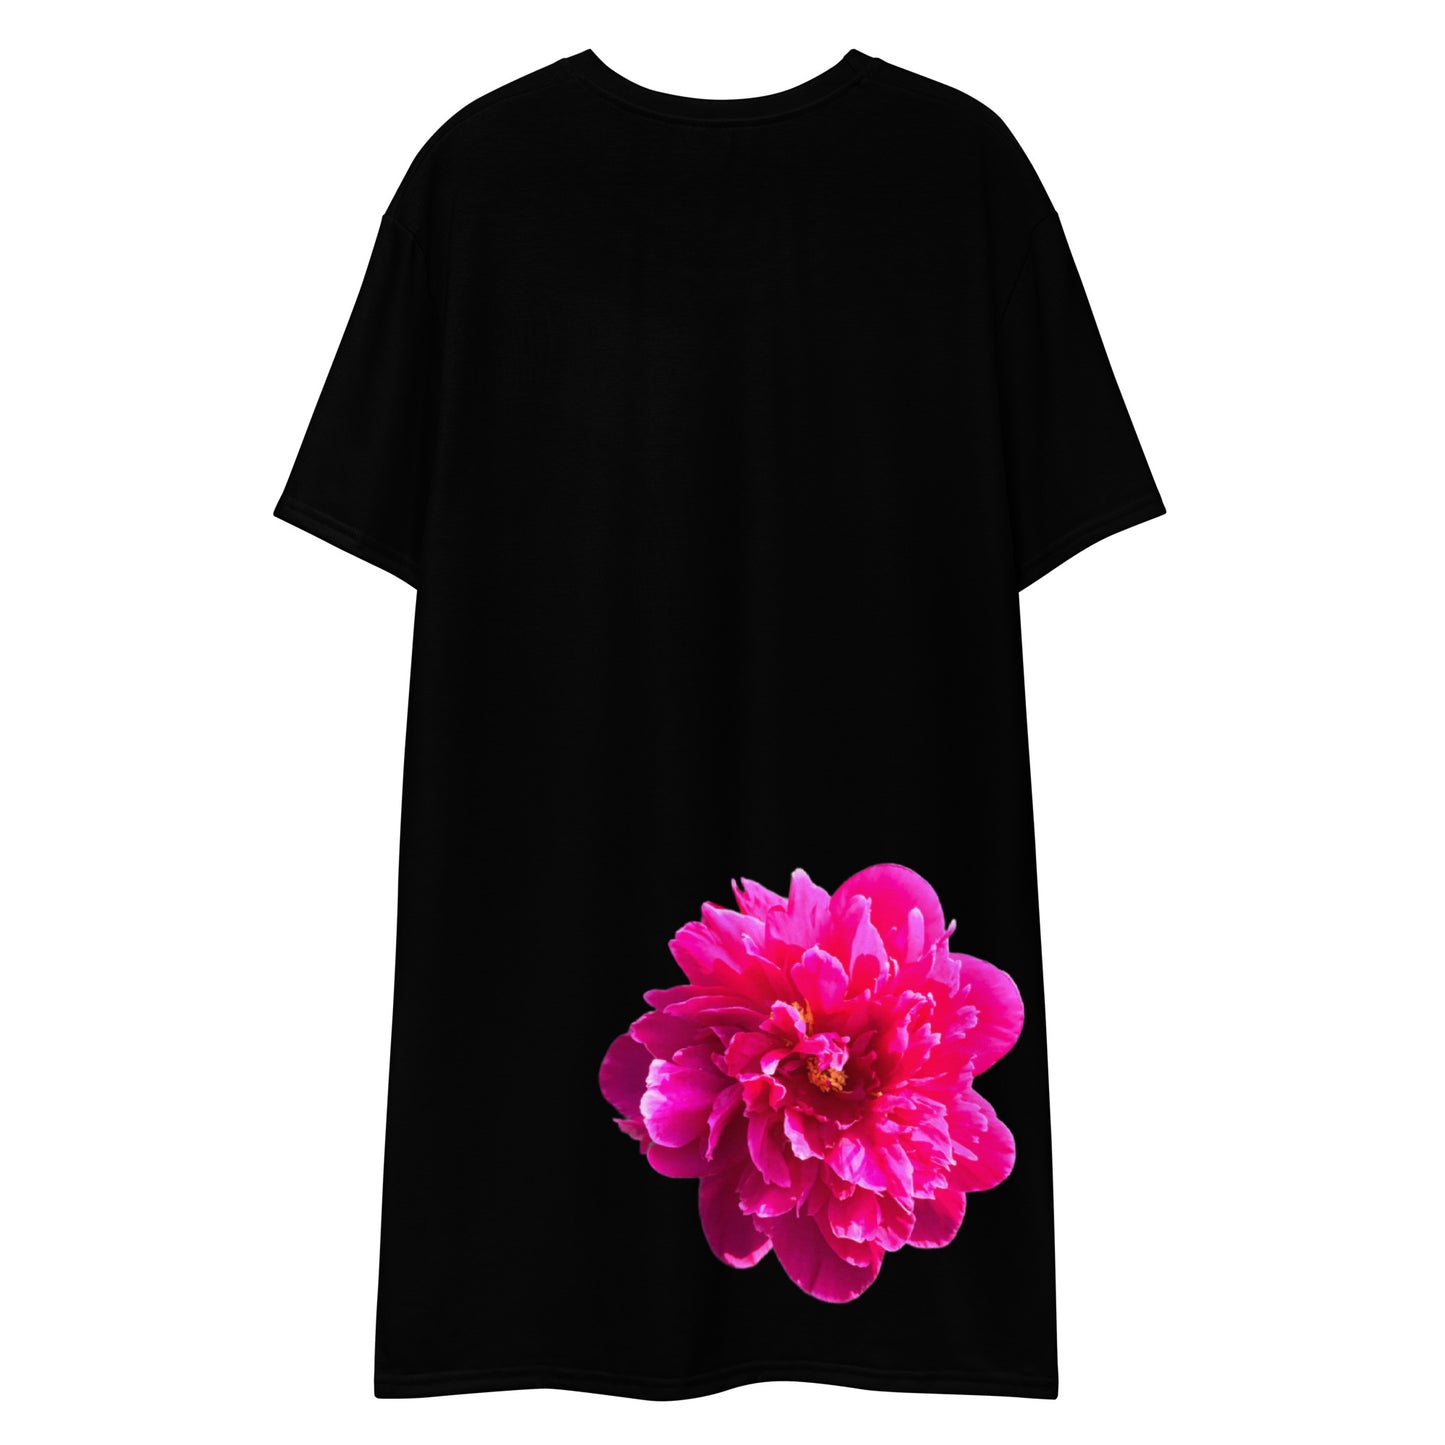 Darla Black T-shirt Dress